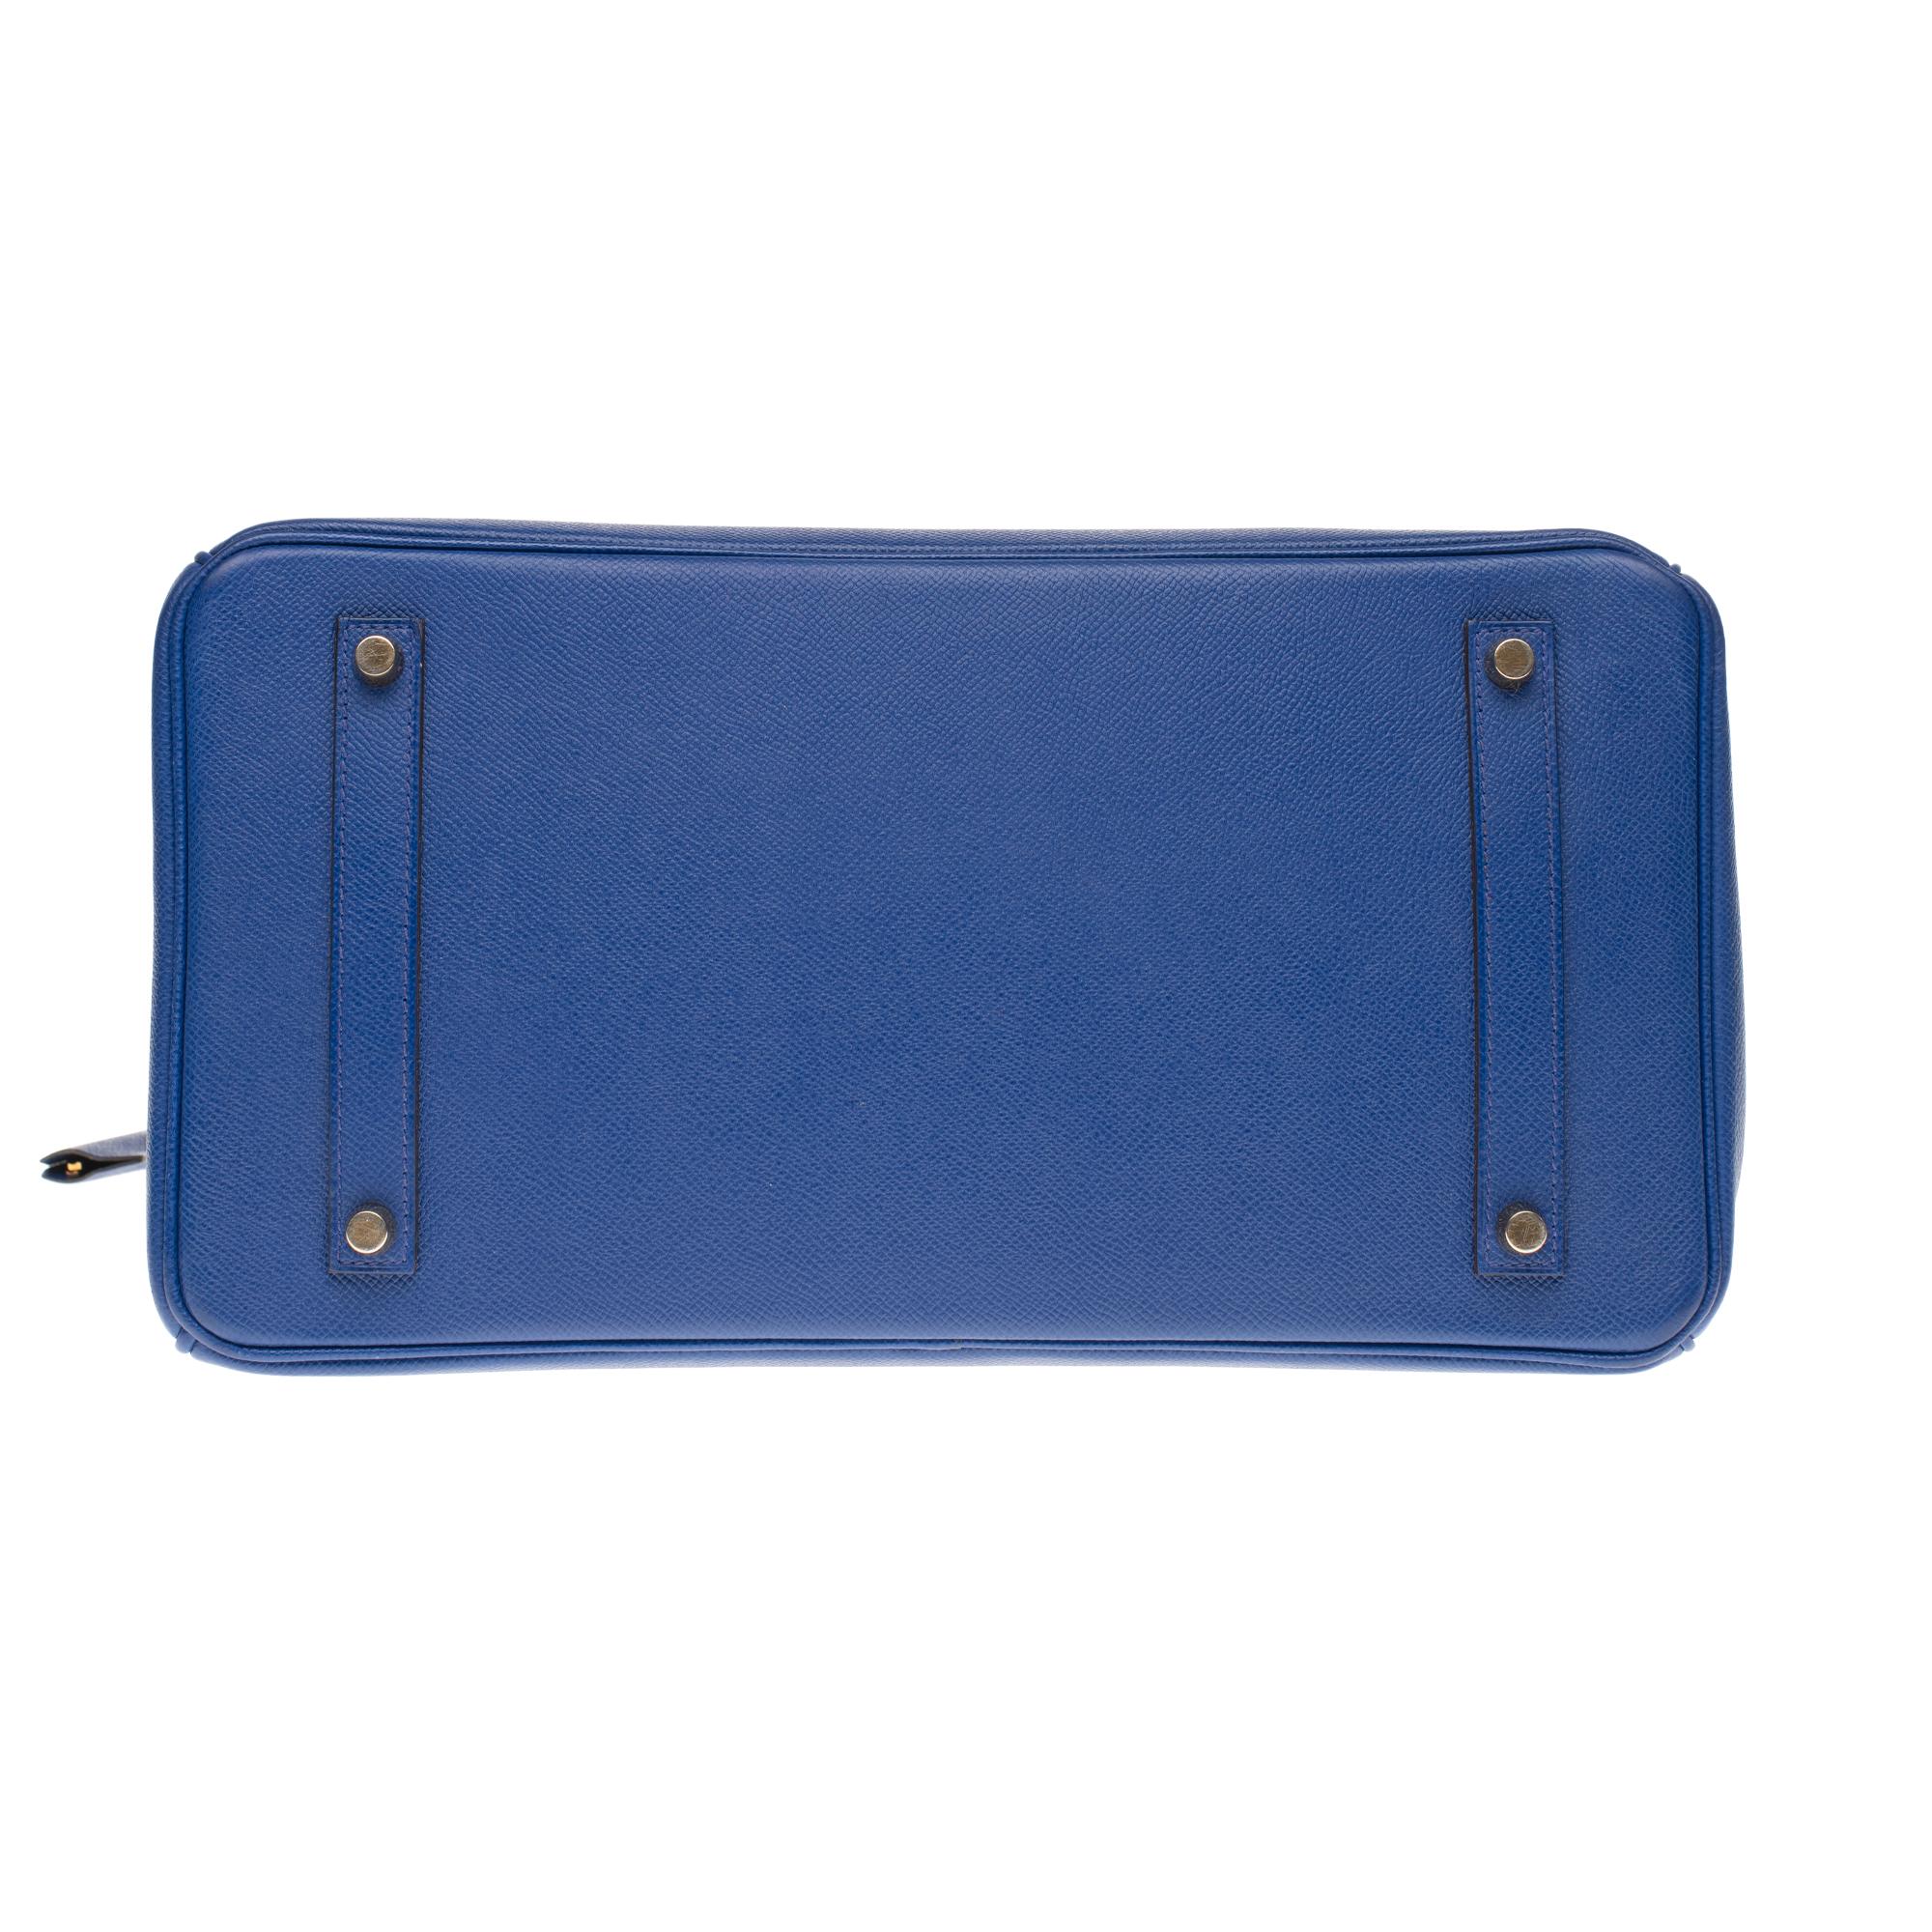 Hermès Birkin 35 handbag in bleu électrique epsom leather, GHW 3